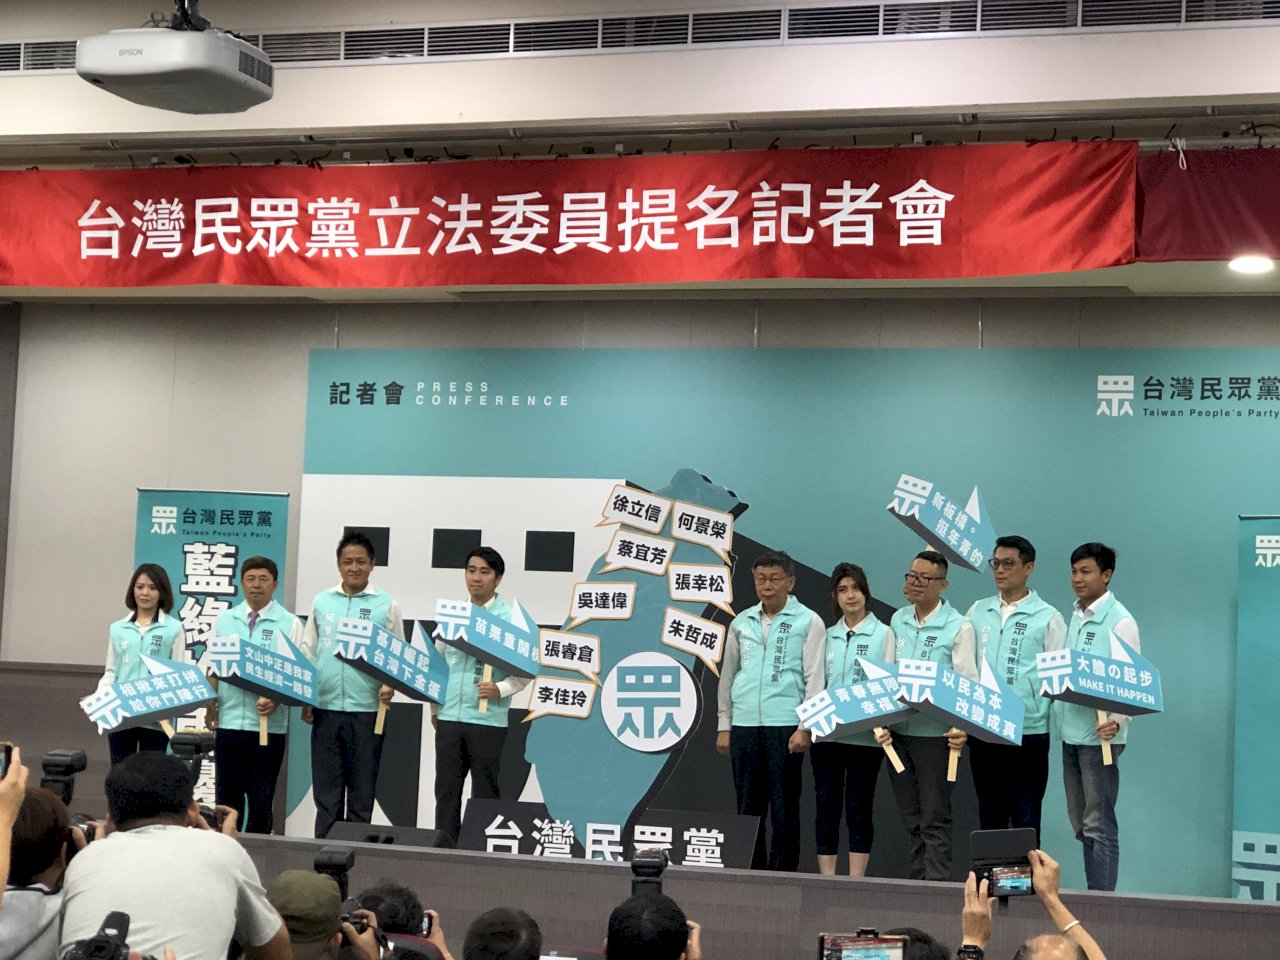 跳脫藍綠之外 台灣民眾黨公布首波立委提名人選